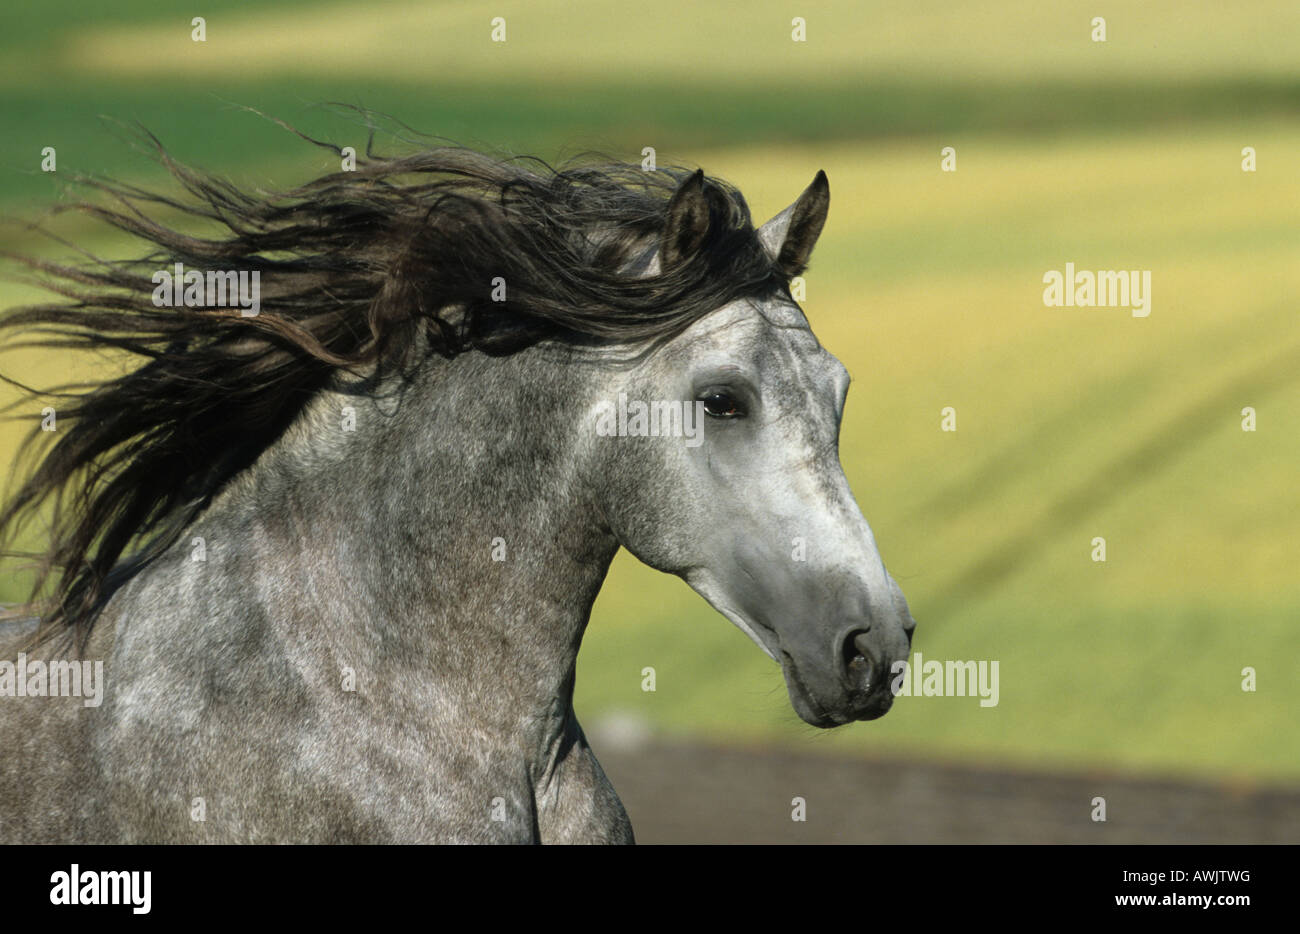 Cavallo andaluso (Equus caballus) ritratto di stallone con la criniera fluente Foto Stock